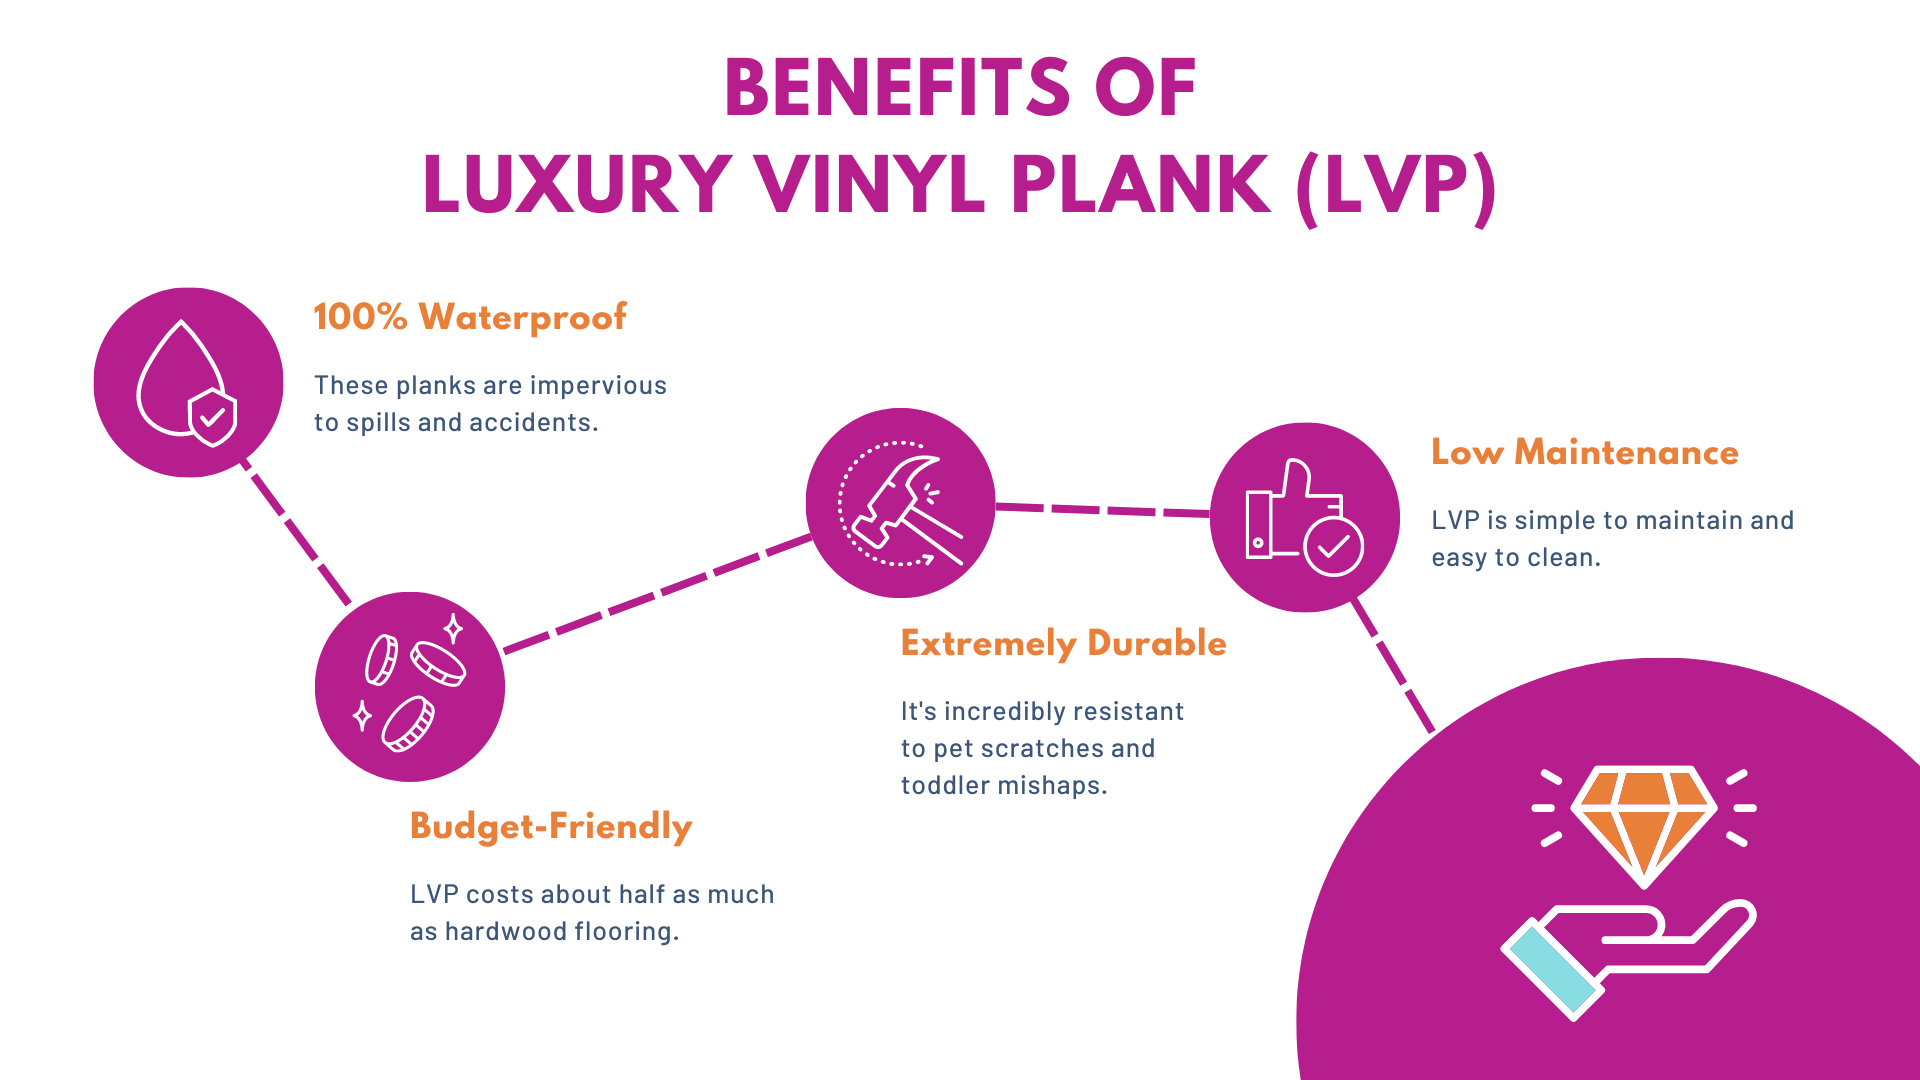 Benefits of Waterproof Luxury Vinyl Plank LVP Floors - Floorily